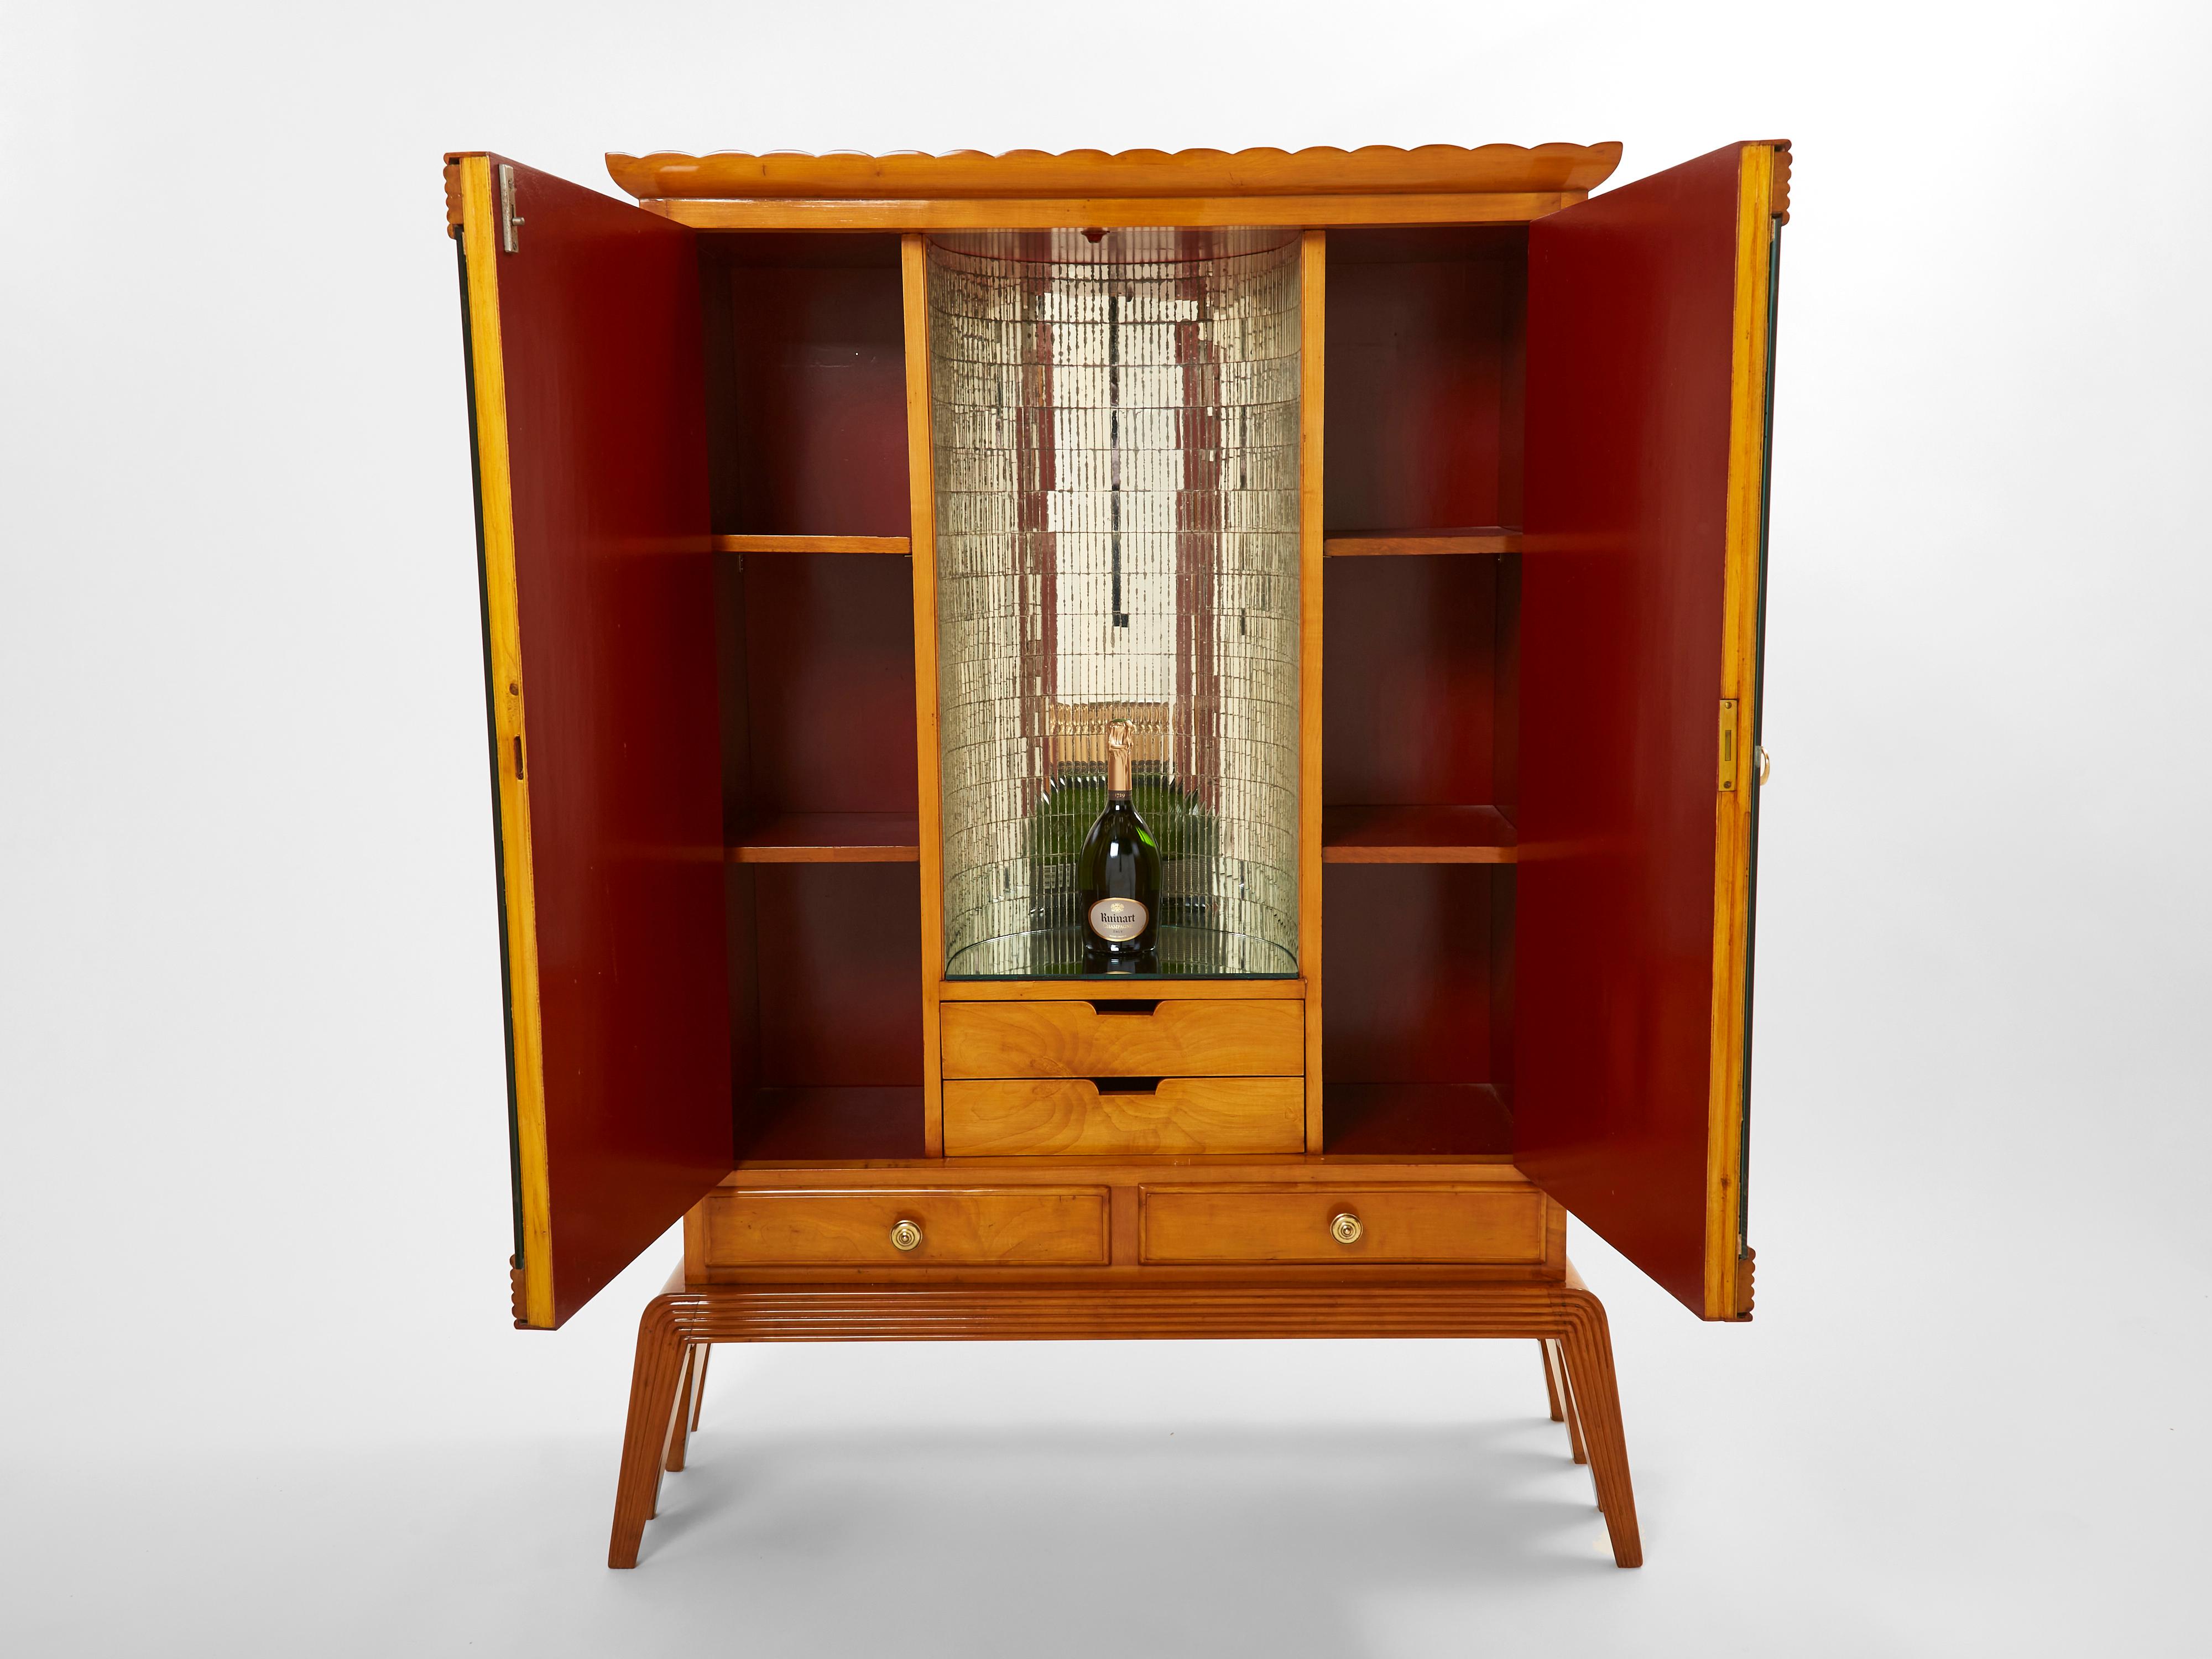 Osvaldo Borsani Cherry Wood Mirrored Bar Cabinet for Abv, 1940 For Sale 5